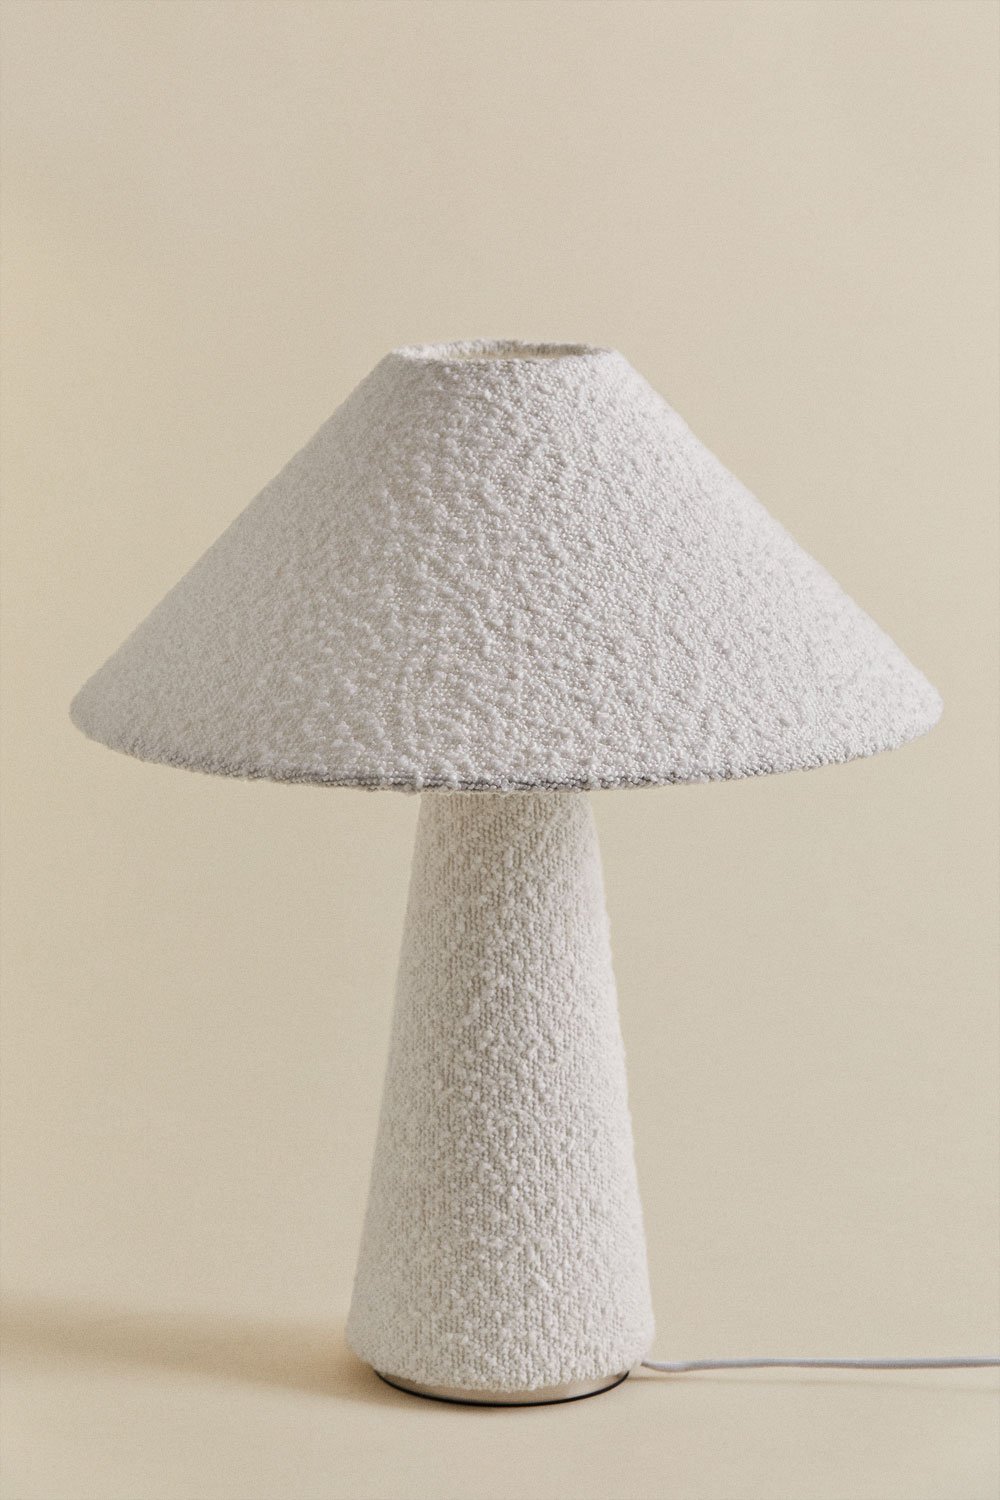 Liselot tafellamp van schapenvacht, galerij beeld 1